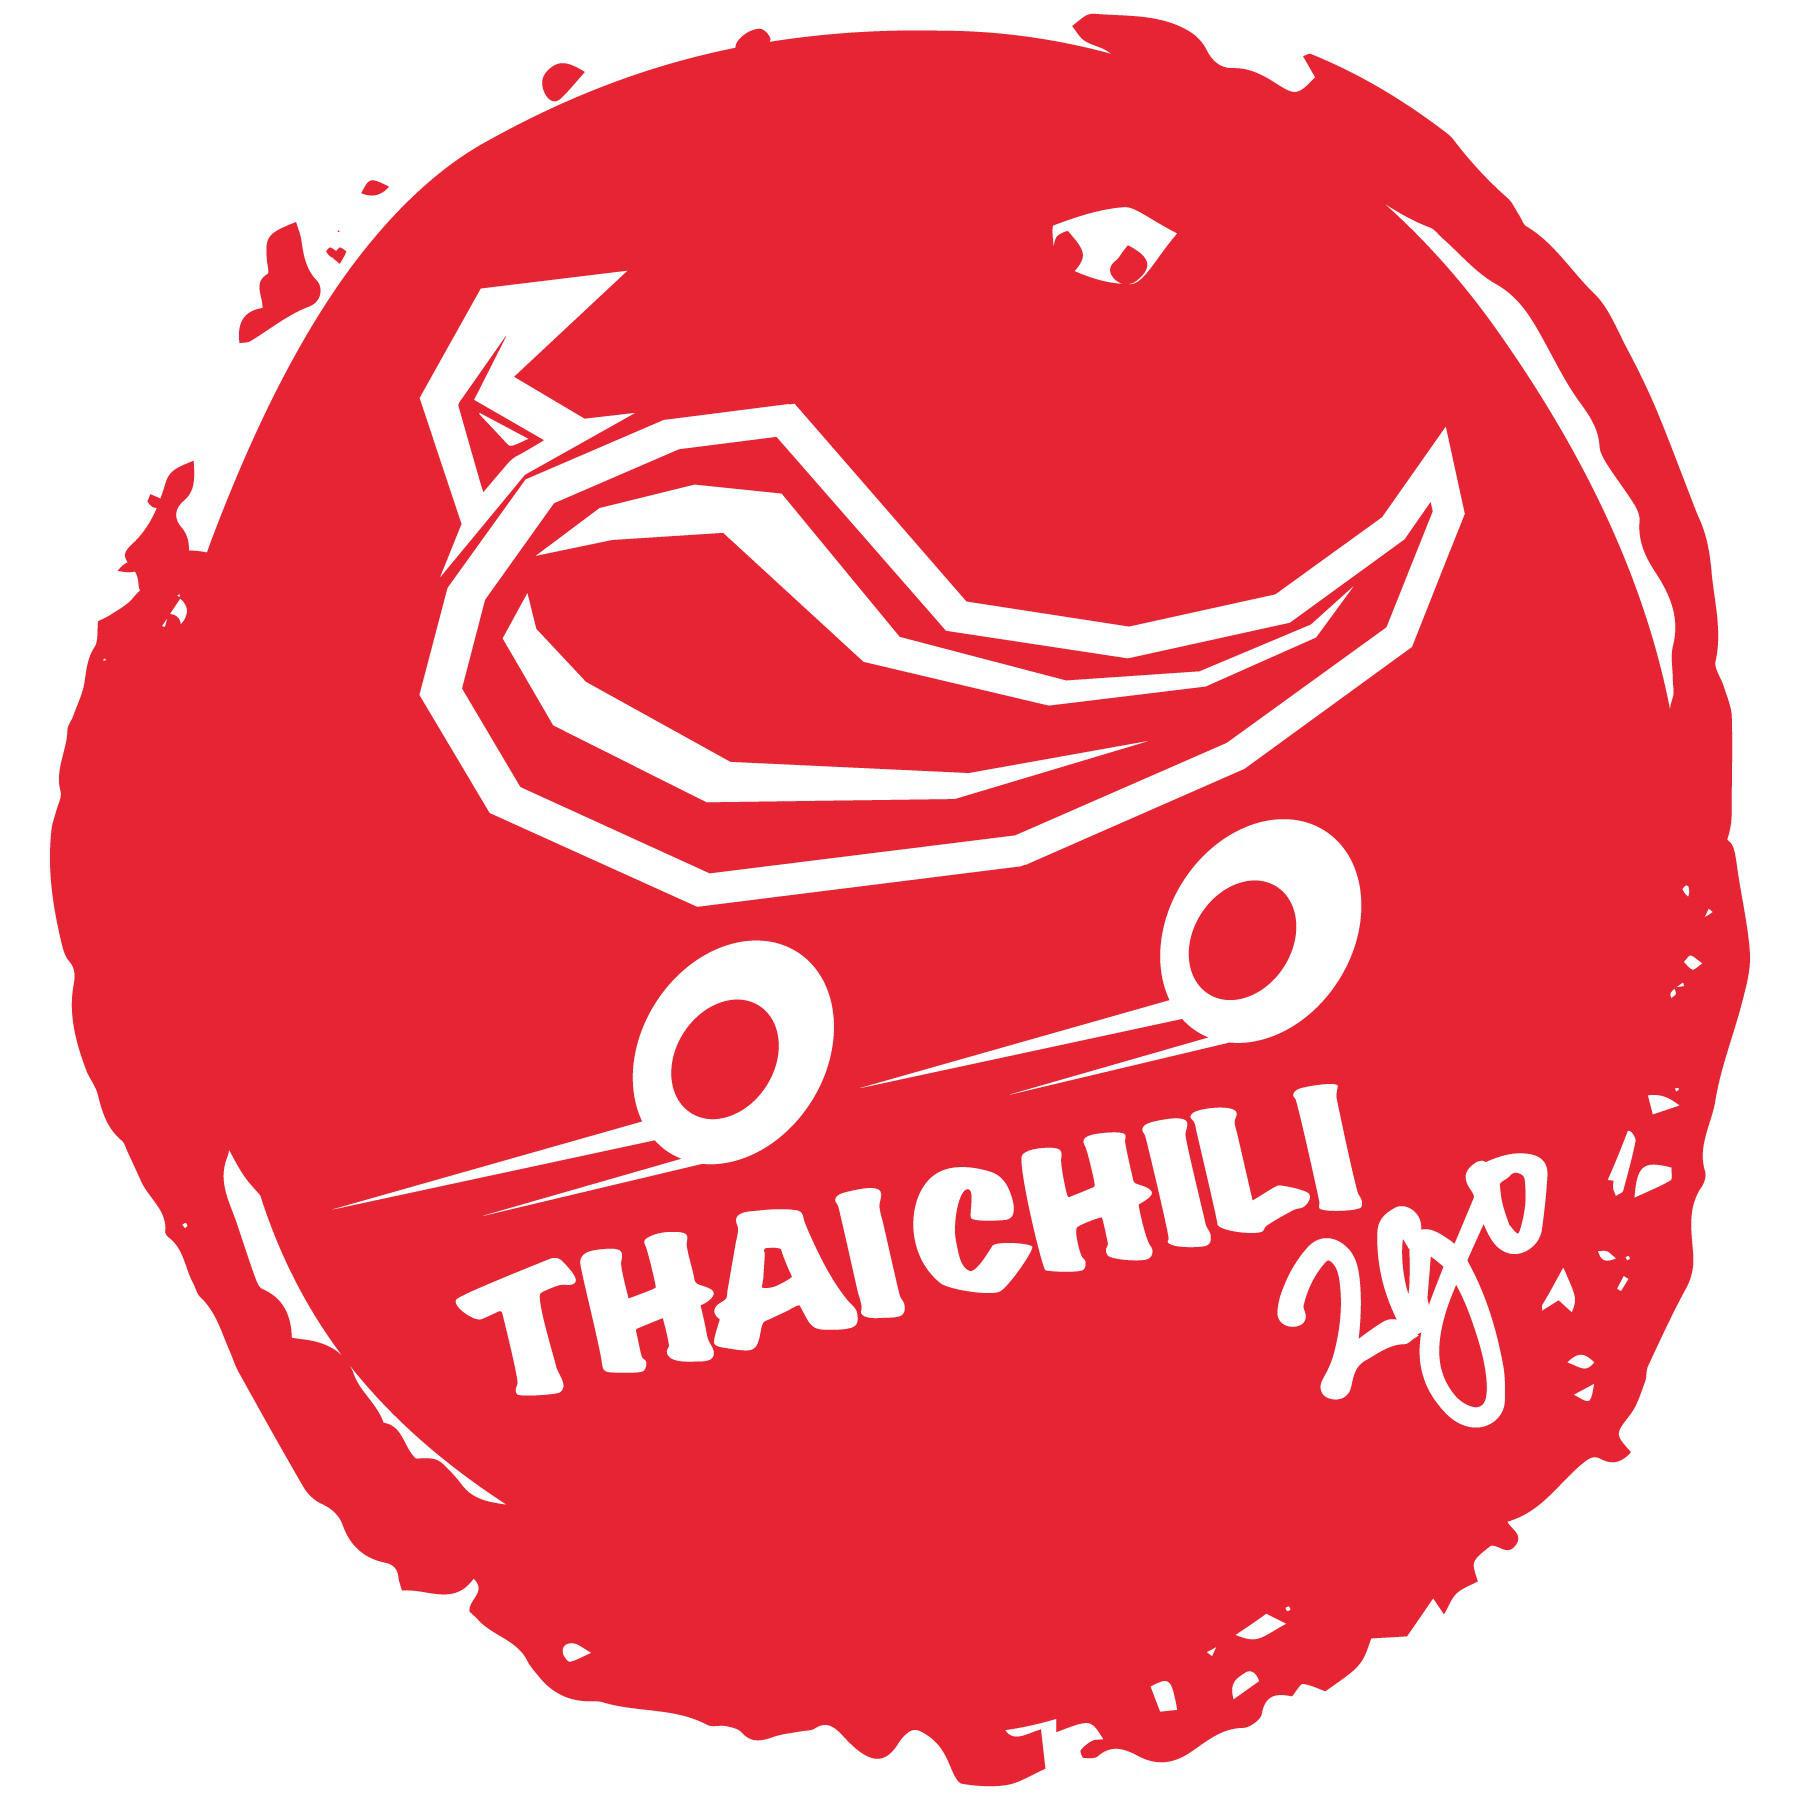 Thai Chili 2go - Chandler, AZ 85286 - (480)531-1680 | ShowMeLocal.com